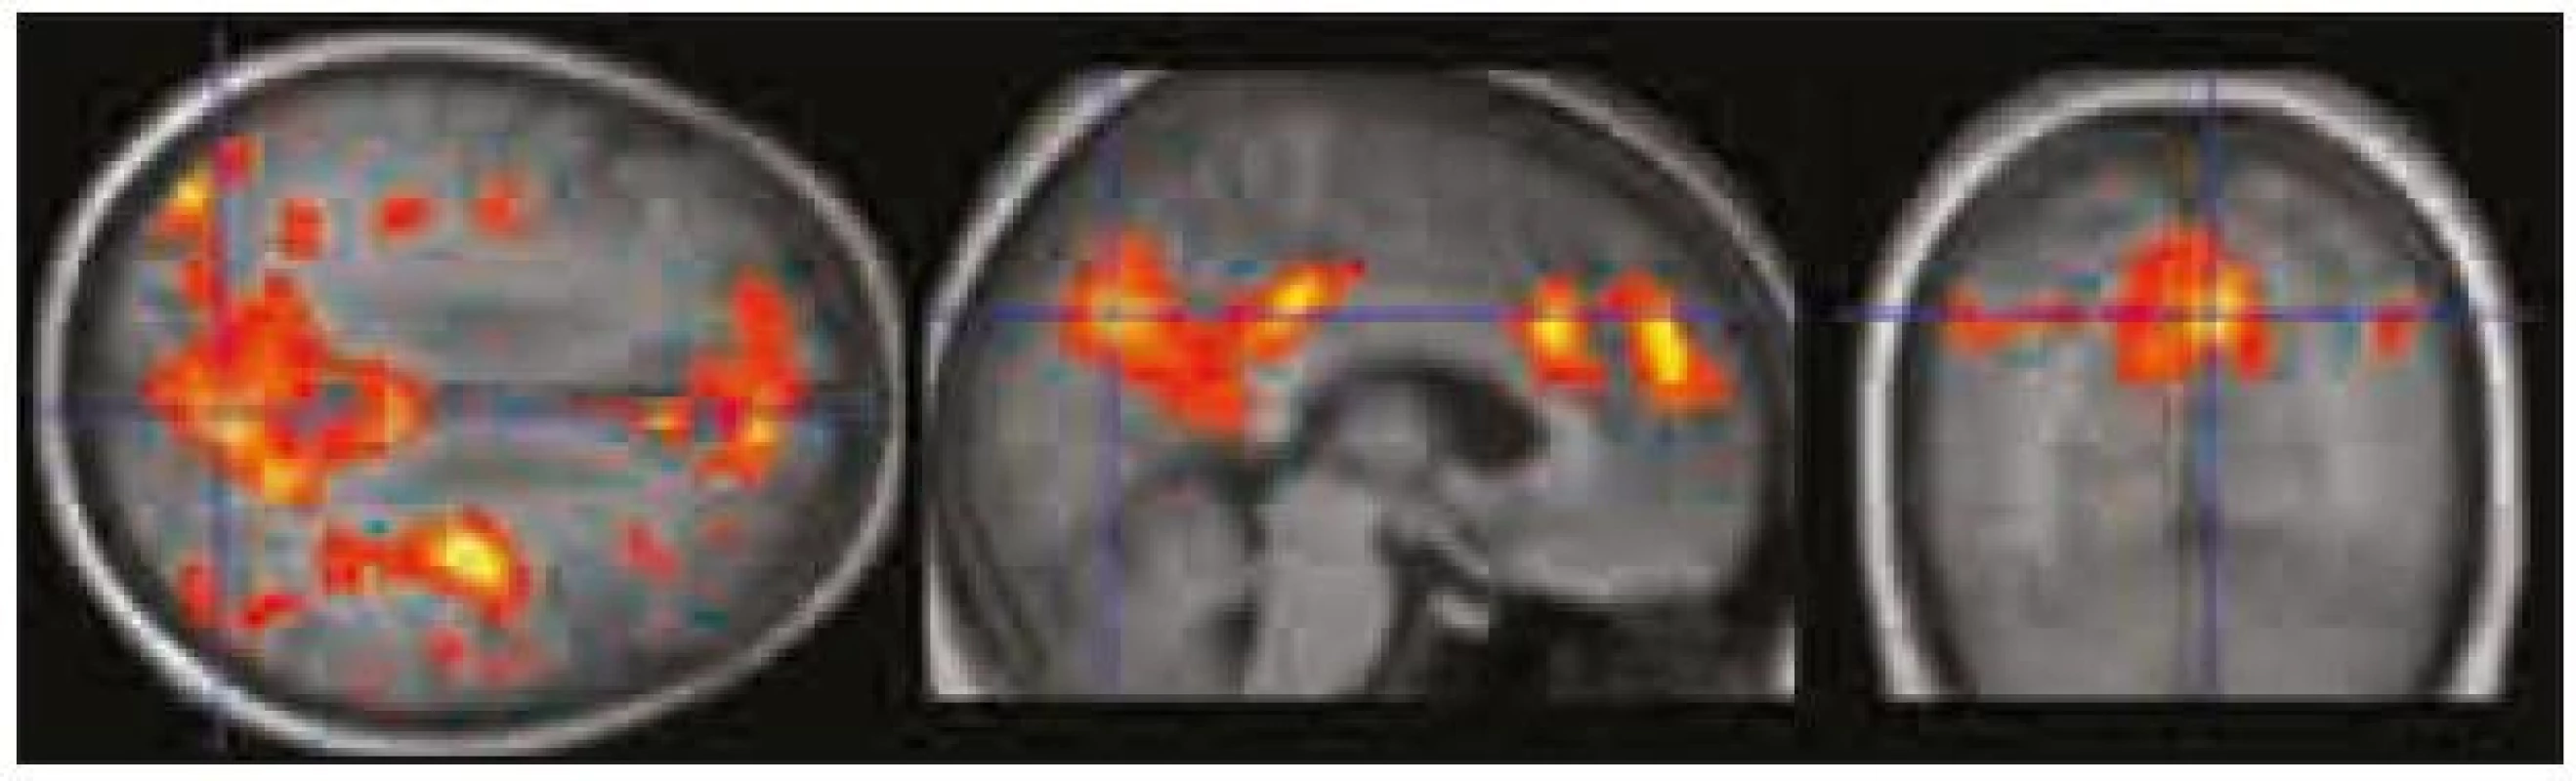 Oblasti zapojené do DMS identifikované pomocí „seed“ analýzy jsou rovněž zadní cingulum/precuneus, ventromediální prefrontální kortex/přední cingulum a gyrus angularis/lobulus parietalis inferior bilaterálně.
V porovnání se zobrazením deaktivací je tato mapa rozsáhlejší a lépe koreluje s výsledky ICA analýzy. Zobrazeno při p &lt; 0,0001 nekorigovaně.
